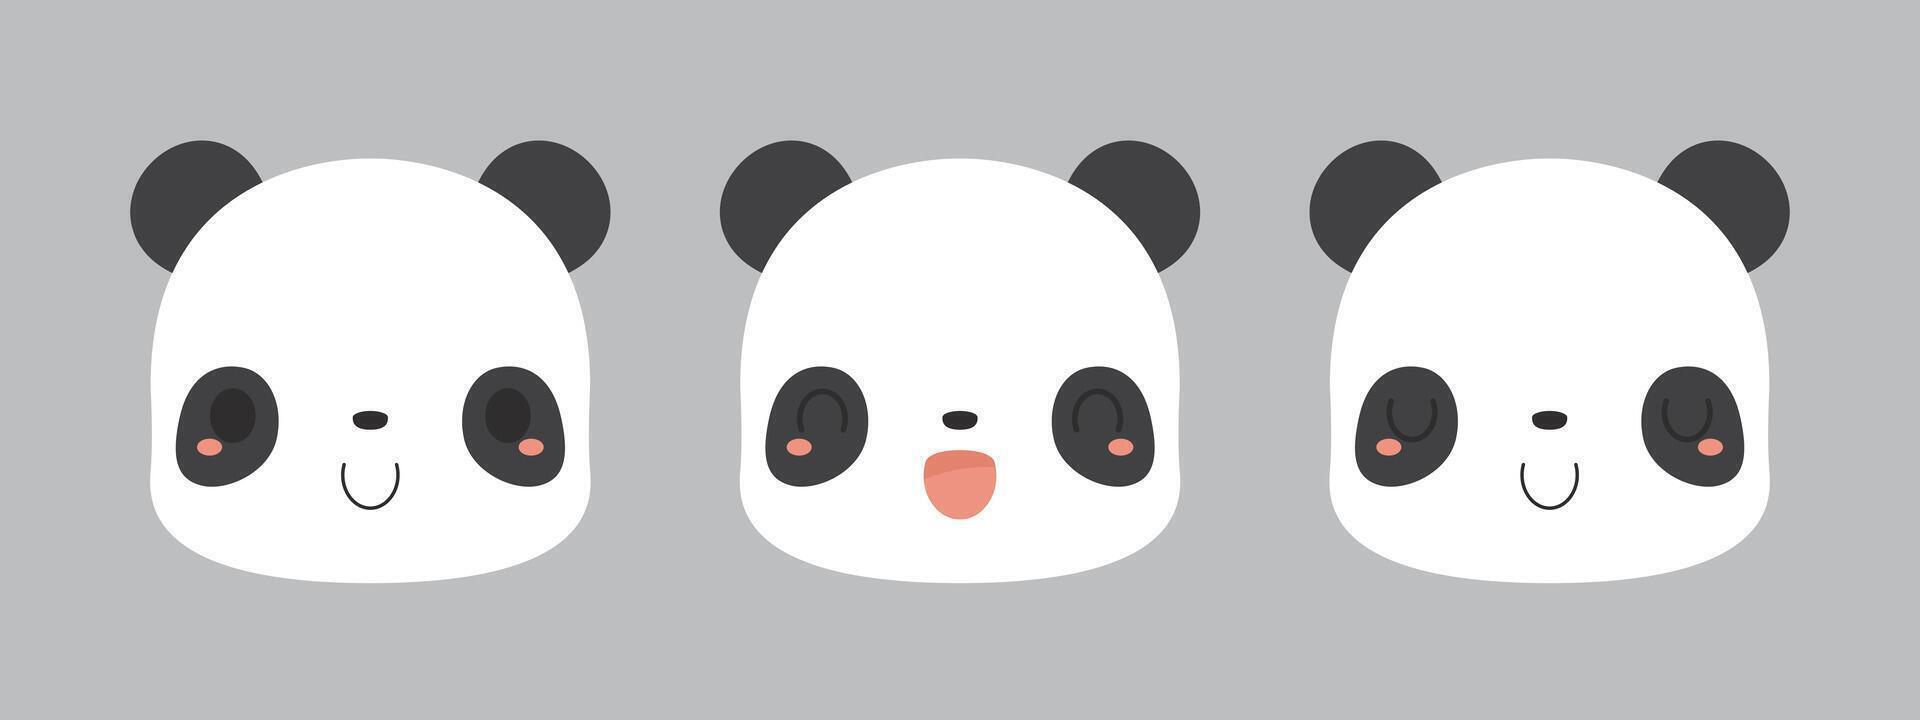 Set of cute giant panda bear cartoon characters. Flat vector illustration.